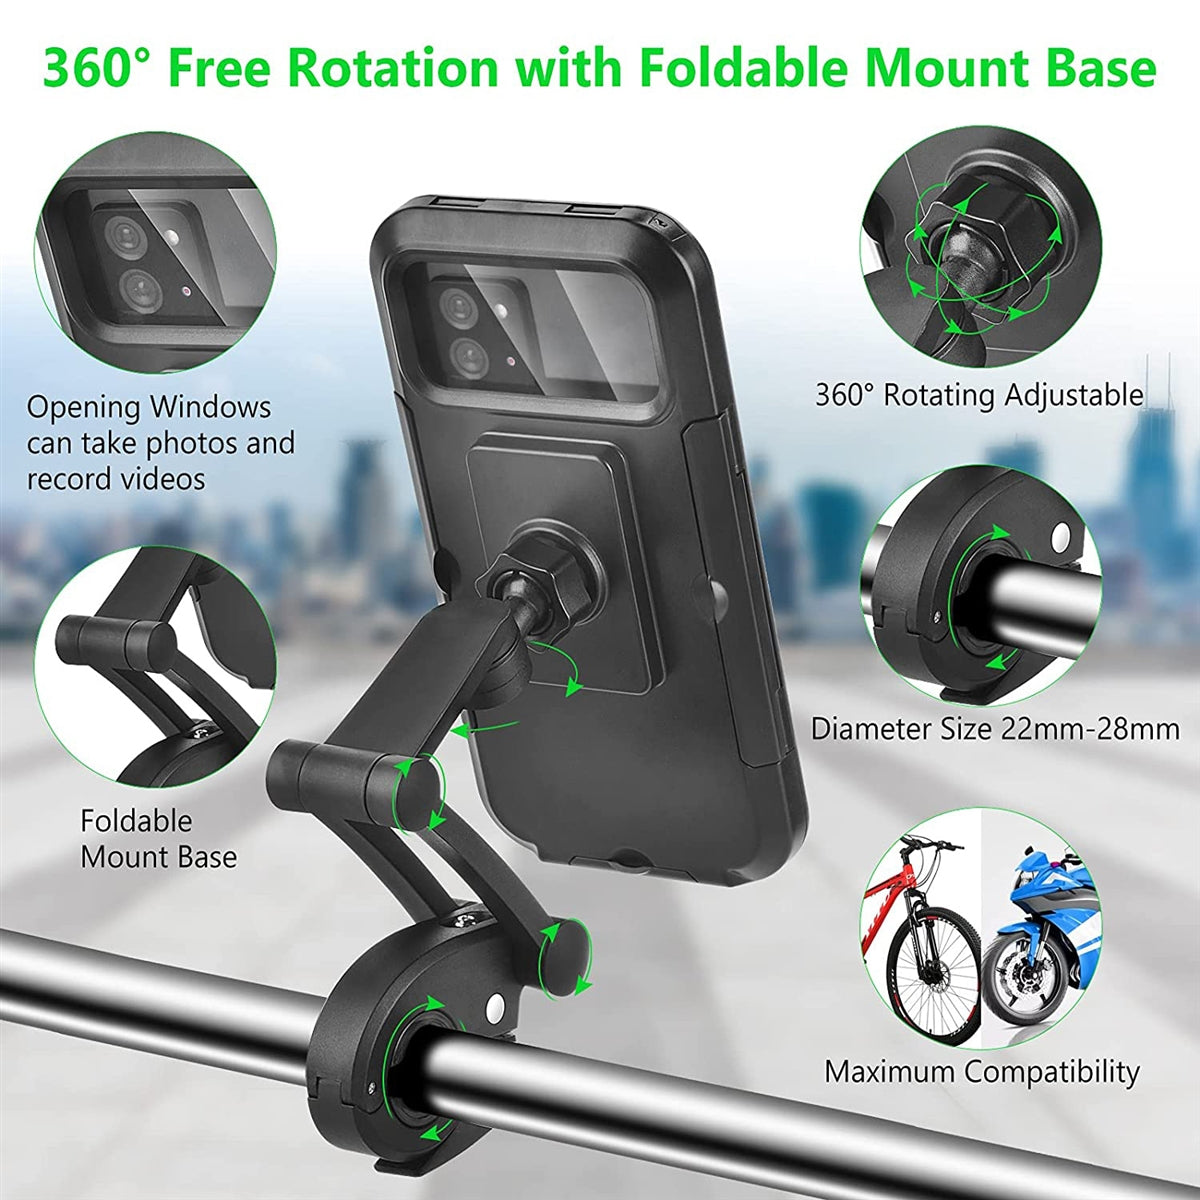 HL-69 Adjustable Magnetic Waterproof Bicycle 6.5" Phone Holder Black